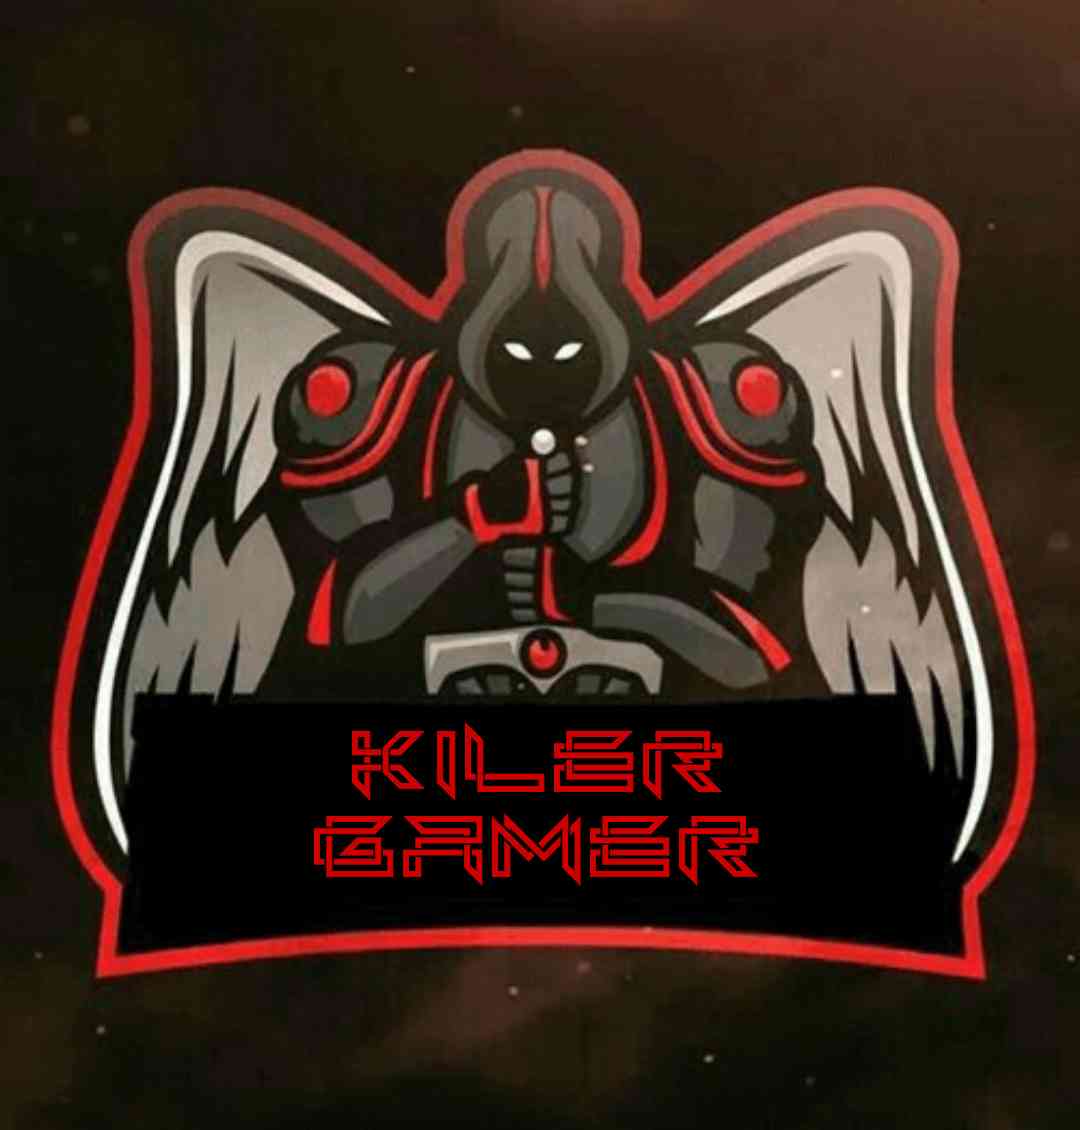 kiler gamer